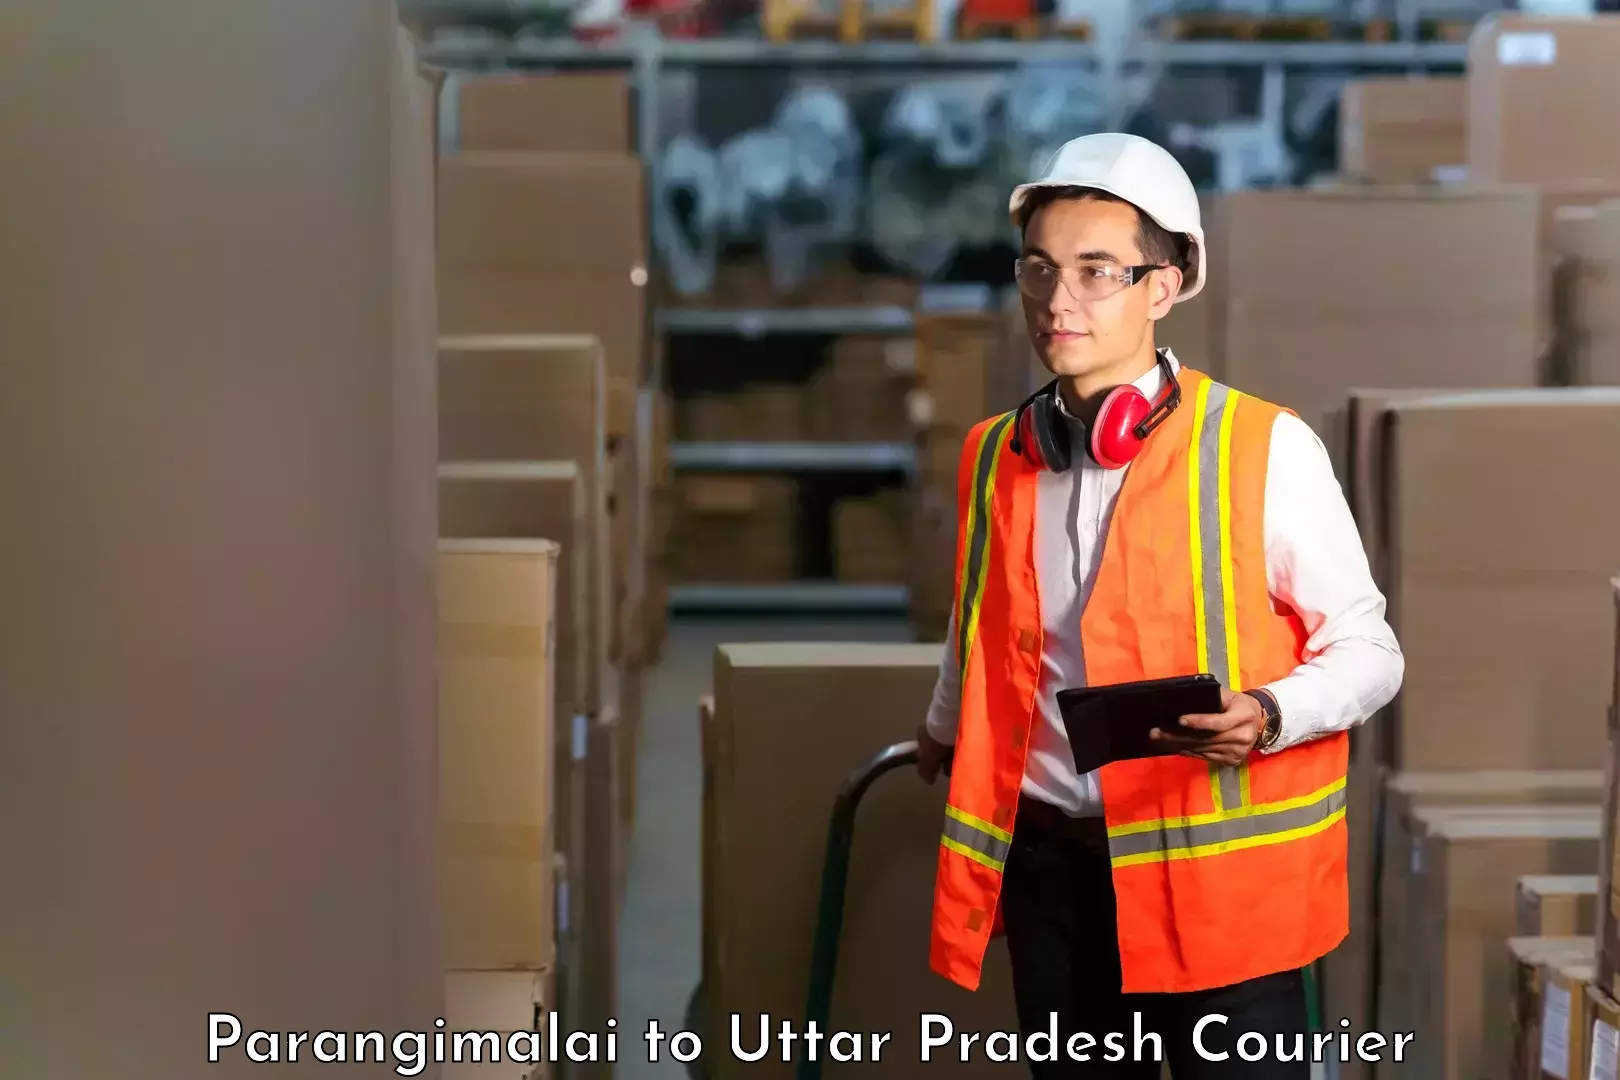 Professional courier services Parangimalai to Varanasi